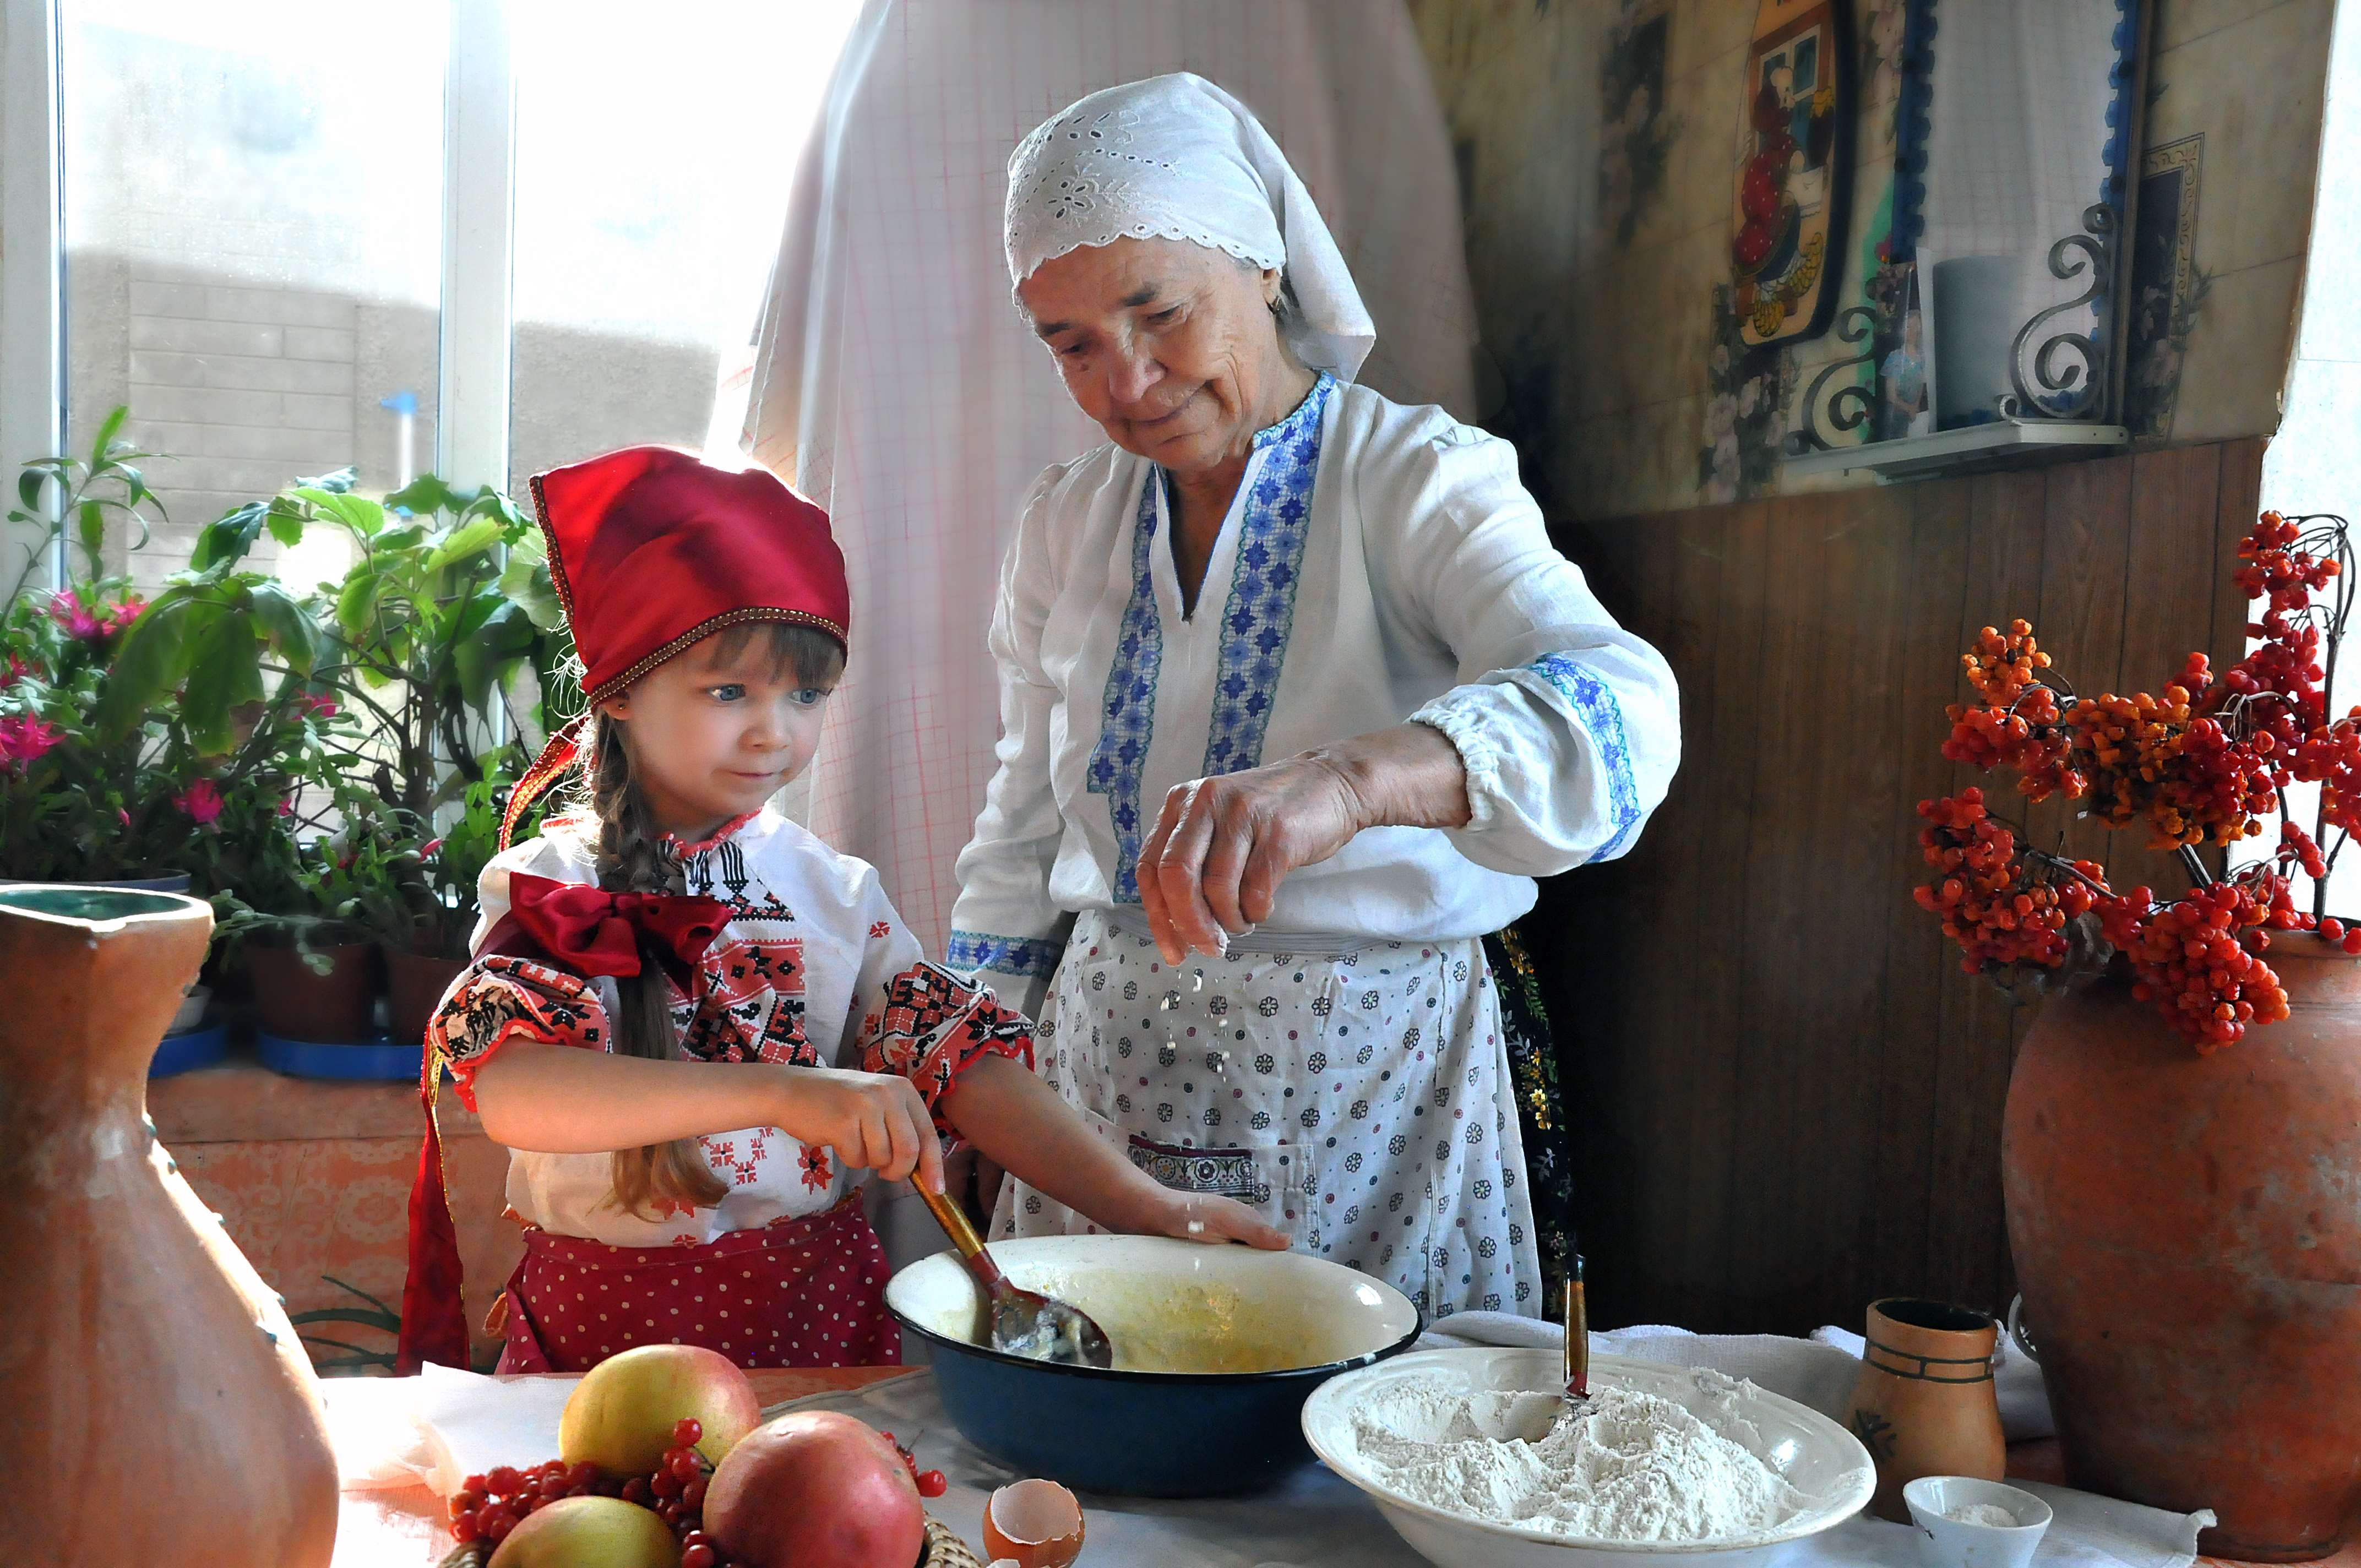 Лапшевня бабули хо. Бабушка печет пироги. Кухня у бабушки в деревне. Бабушка с внучкой село. Бабушка готовит.